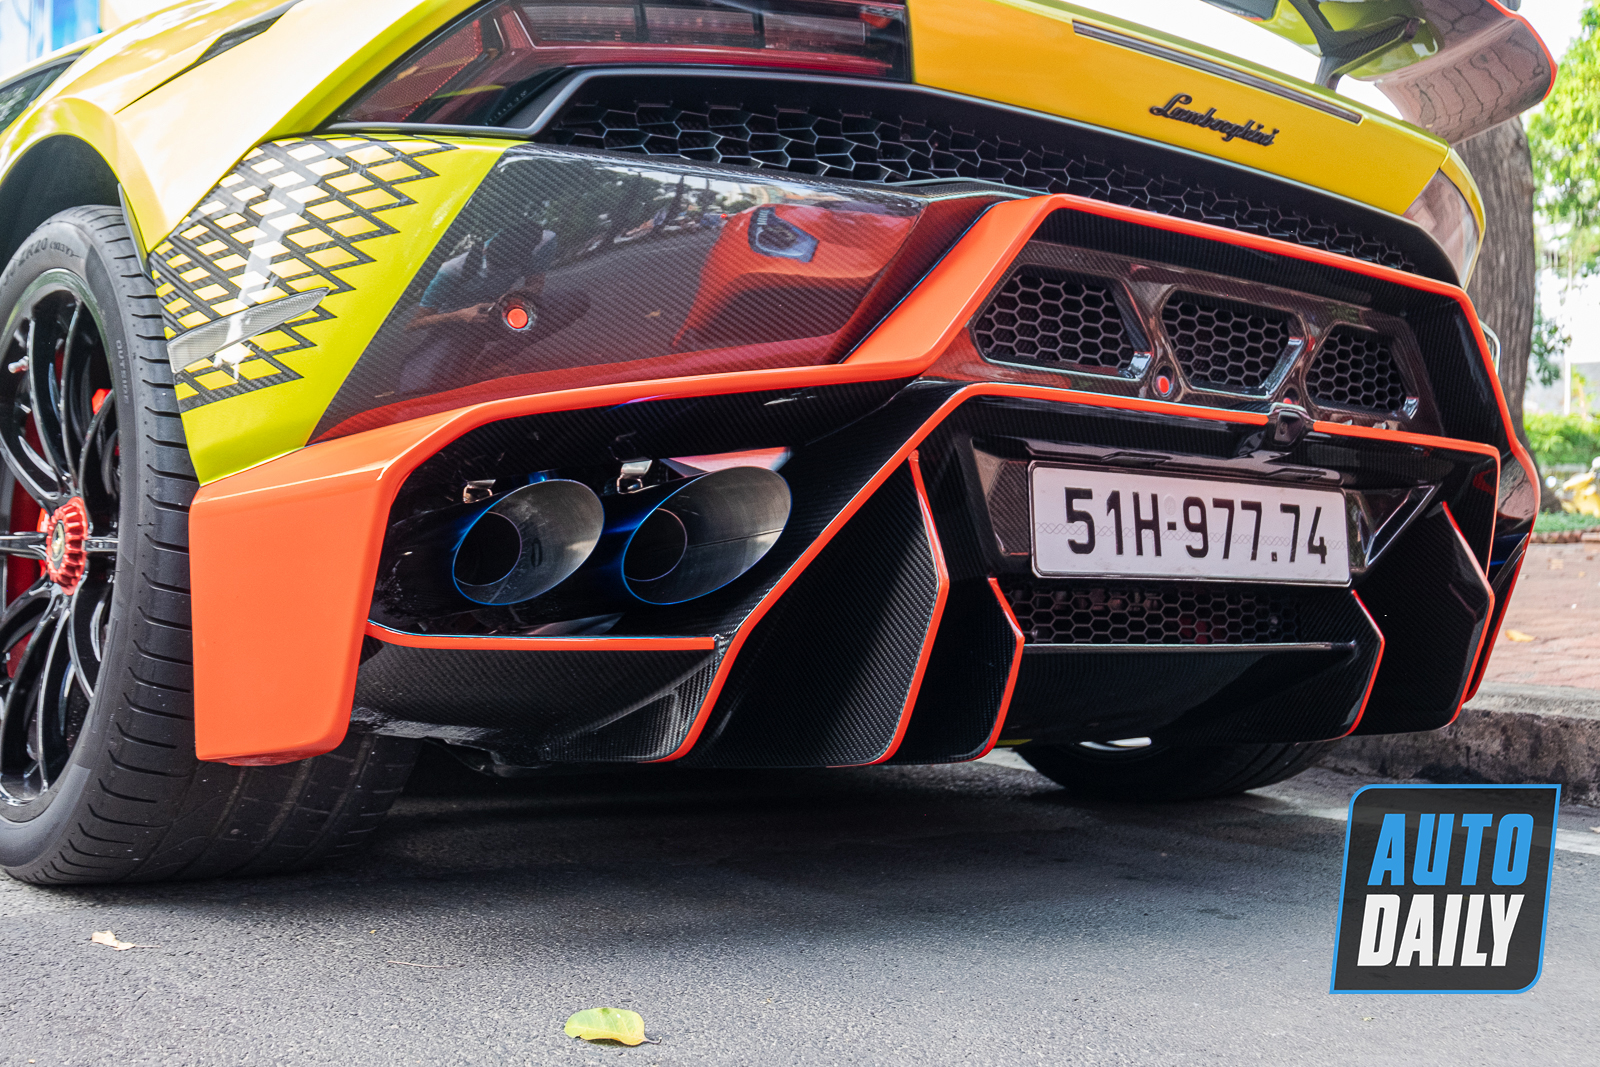 Bắt gặp Lamborghini Huracan độ khủng của đại gia Sài Gòn, bộ mâm hàng thửa giá hàng trăm triệu lamborghini-huracan-do-bo-mam-tram-trieu-autodaily-8.JPG